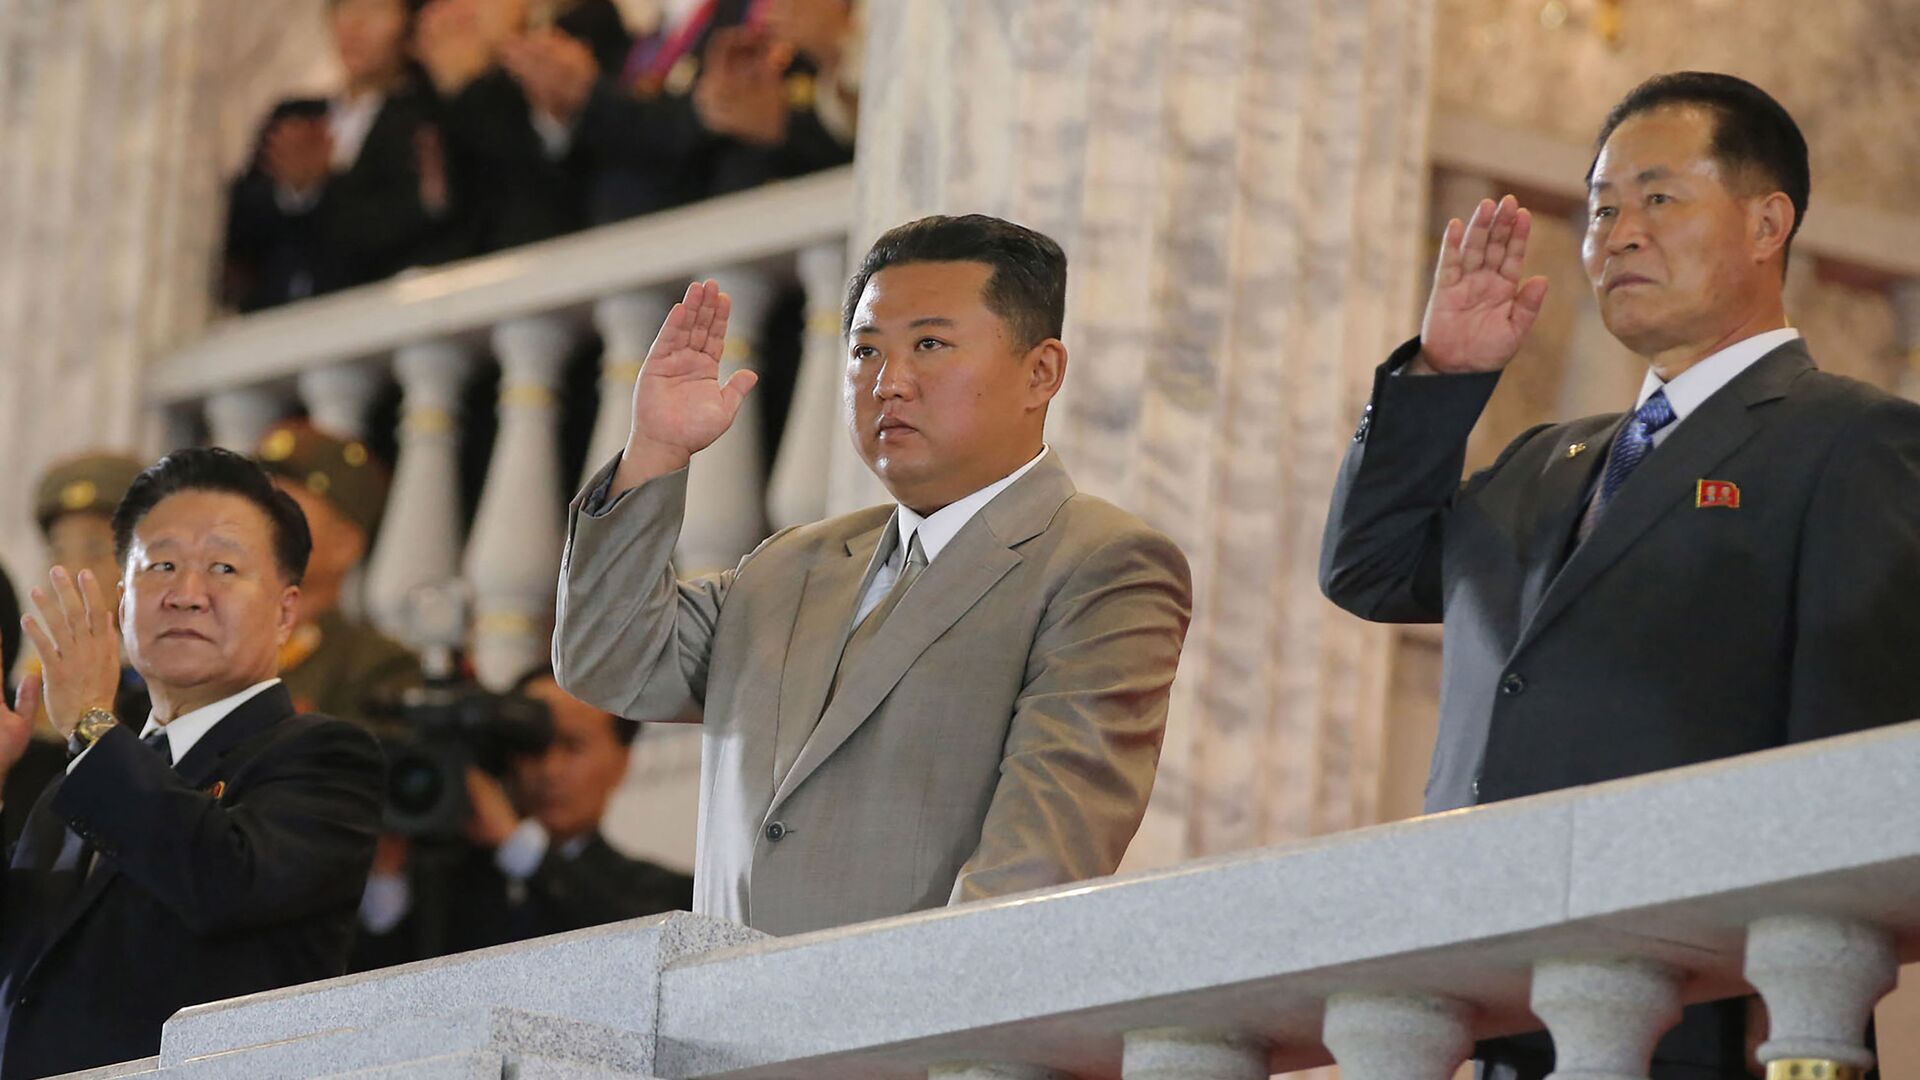  صورة نشرتها وكالة الأنباء المركزية الكورية الرسمية، وتظهر الزعيم الكوري الشمالي كيم جونغ أون يشارك في عرض عسكري للاحتفال بالذكرى الـ 73 لتأسيسها في بيونغ يانغ، 9 سبتمبر/ أيلول 2021 - سبوتنيك عربي, 1920, 30.10.2021